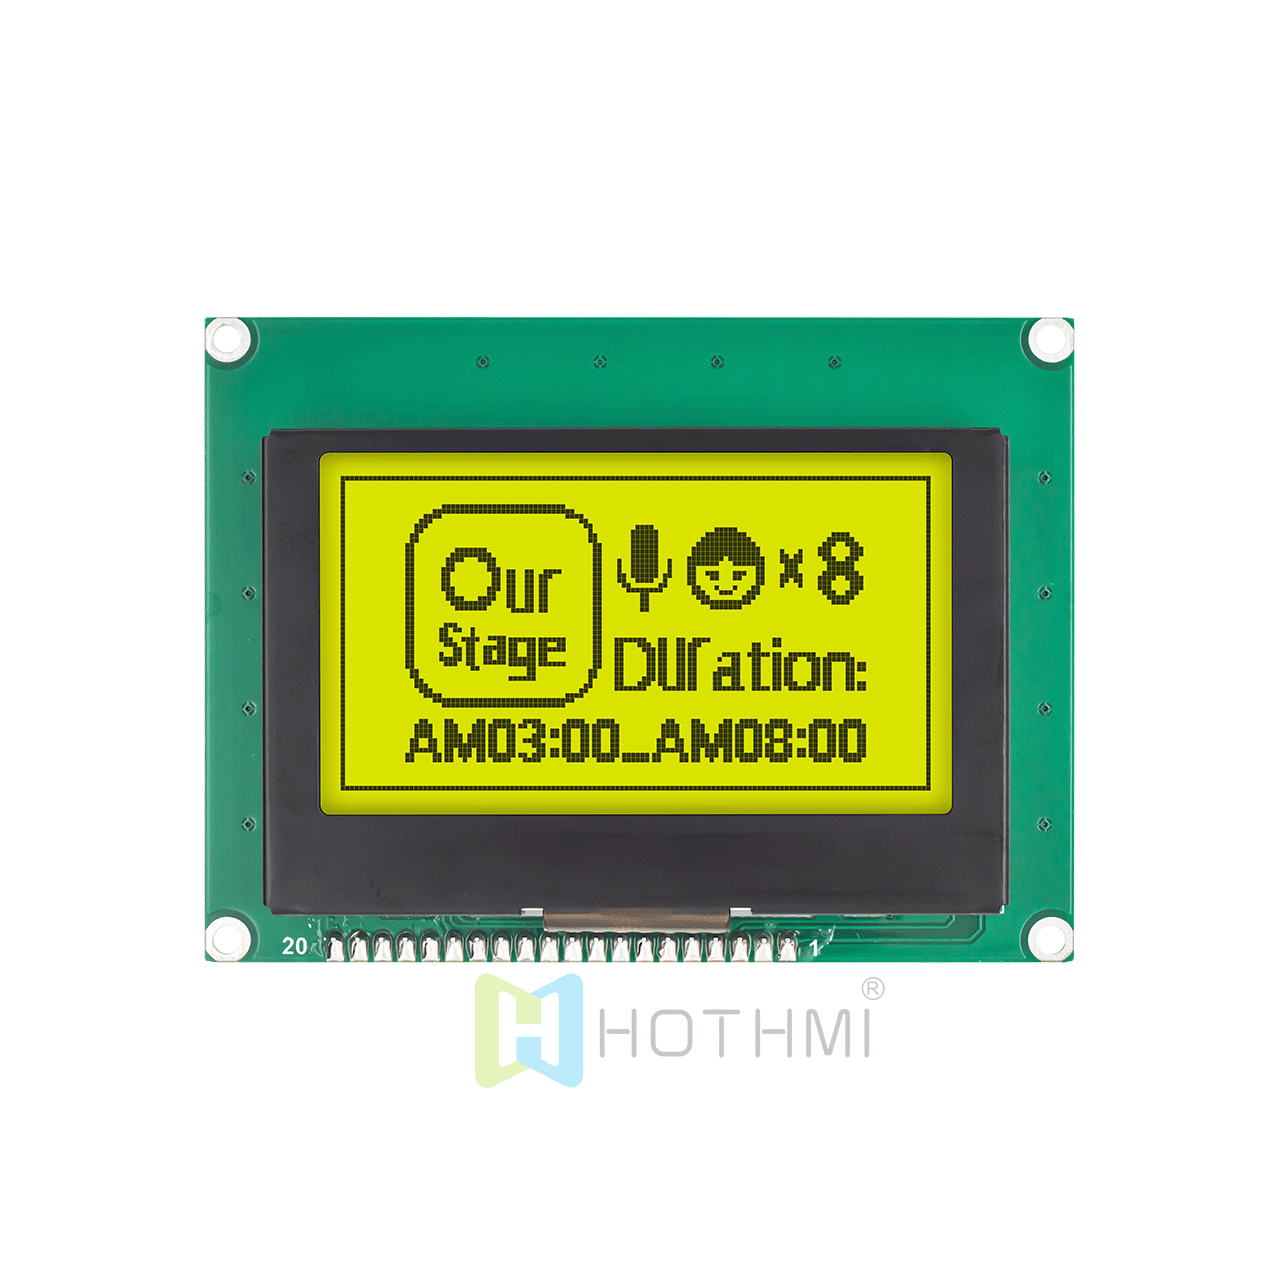 2.7 英寸 LCD128x64 图形 LCD 显示模块 | 128 x 64 图形 LCD 模块 | STN+黄绿背光 | SPI 接口 | Adruino